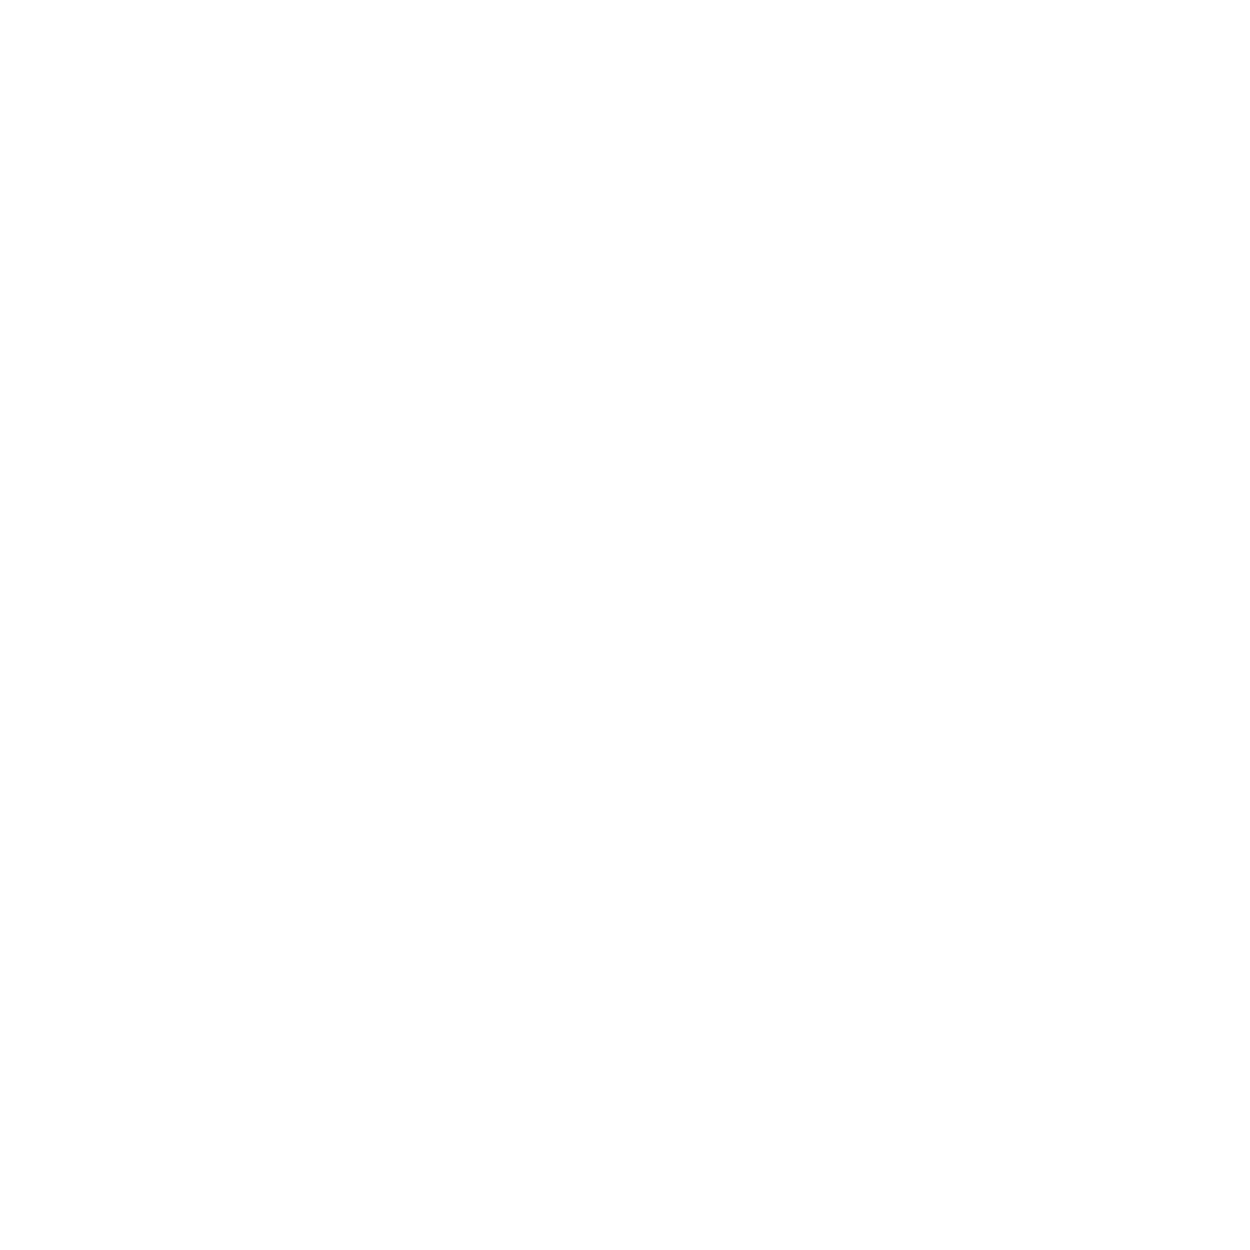 MOL Group